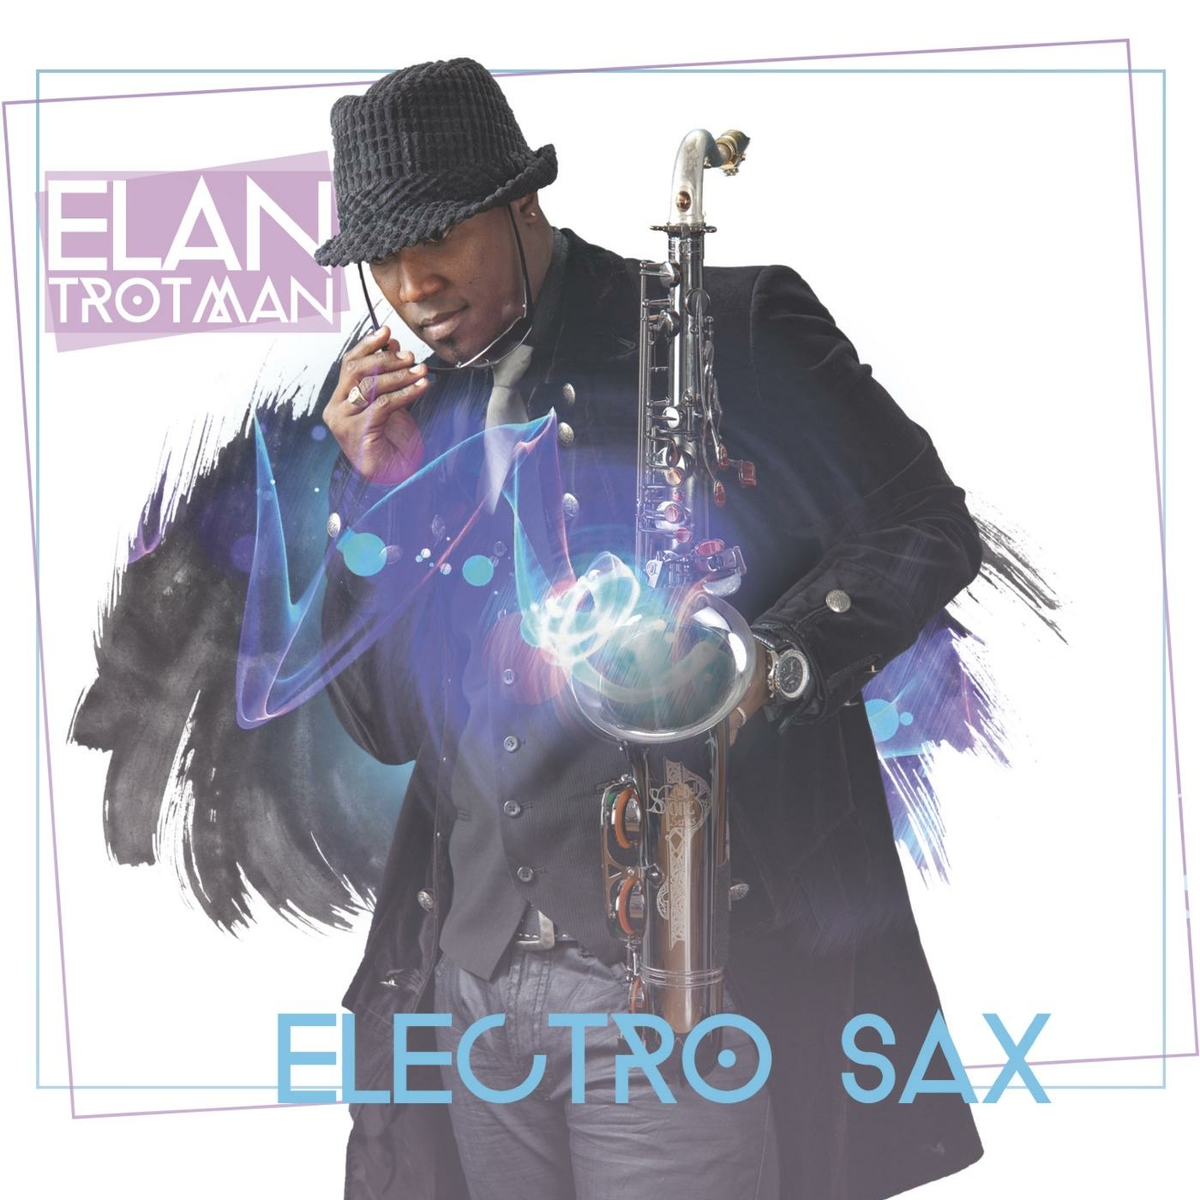 Elan Trotman - Electro Sax